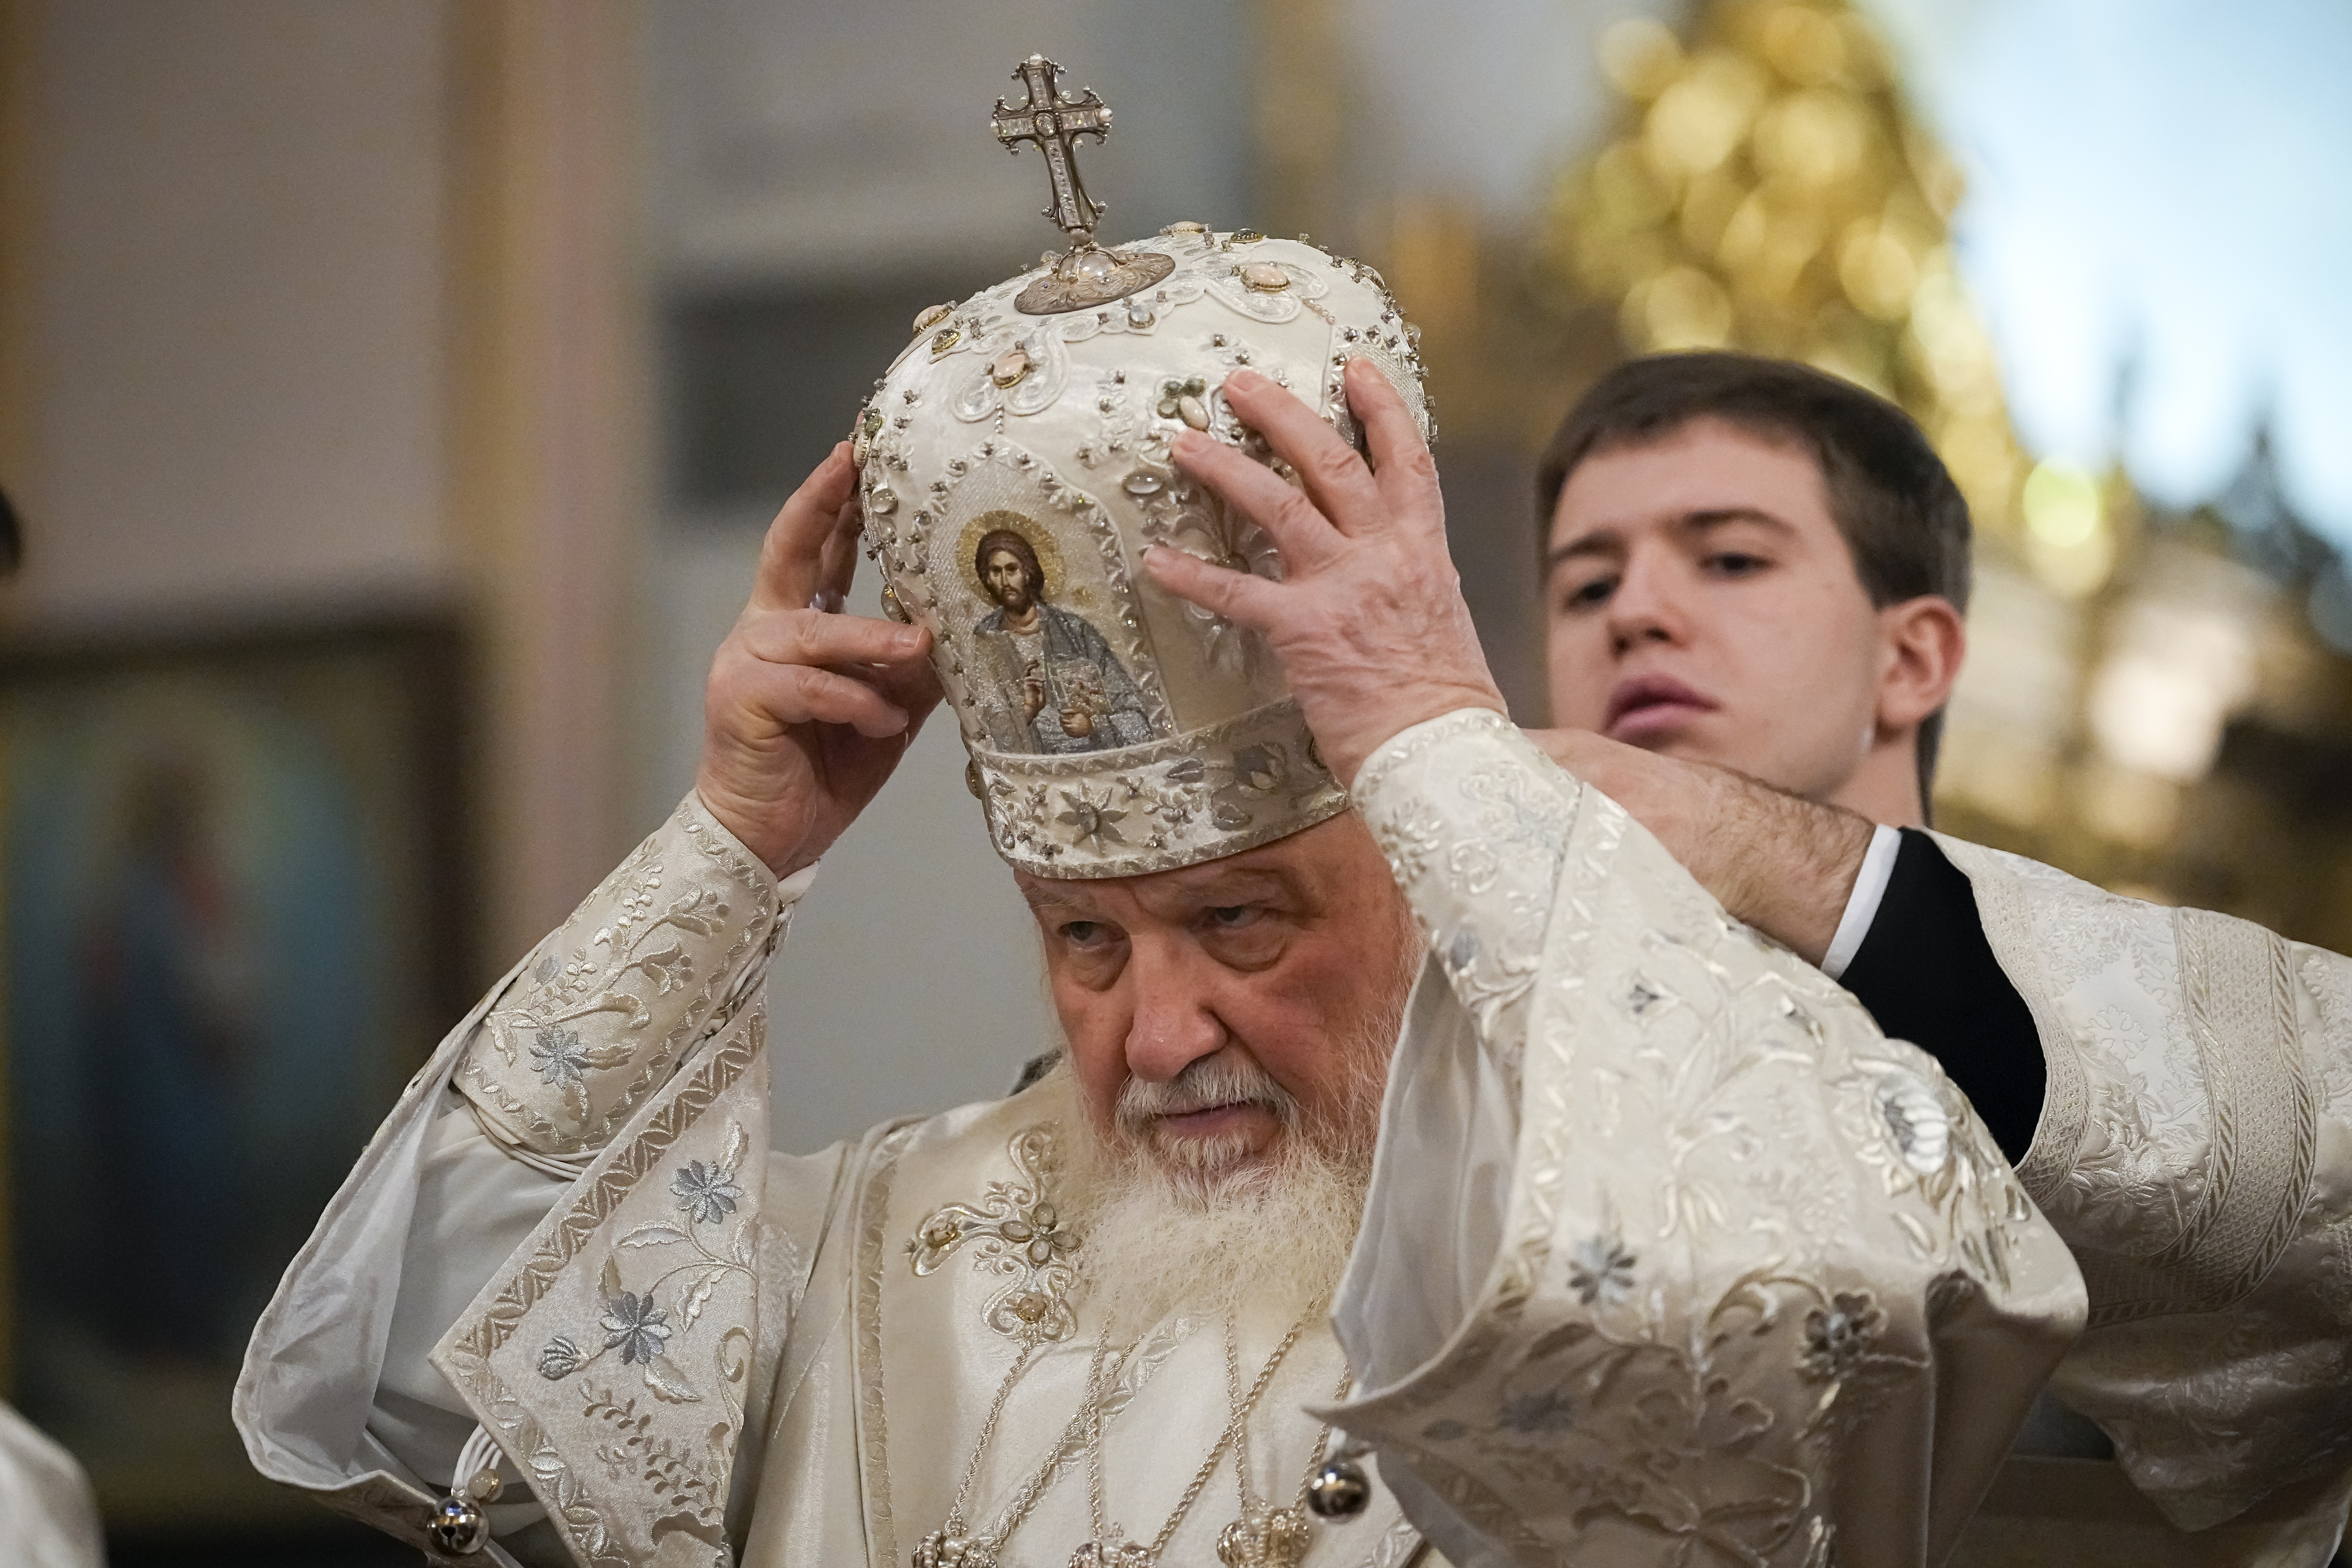 Medier: Den russiske patriarken Kirill spionerte for KGB i Sveits på 1970-tallet